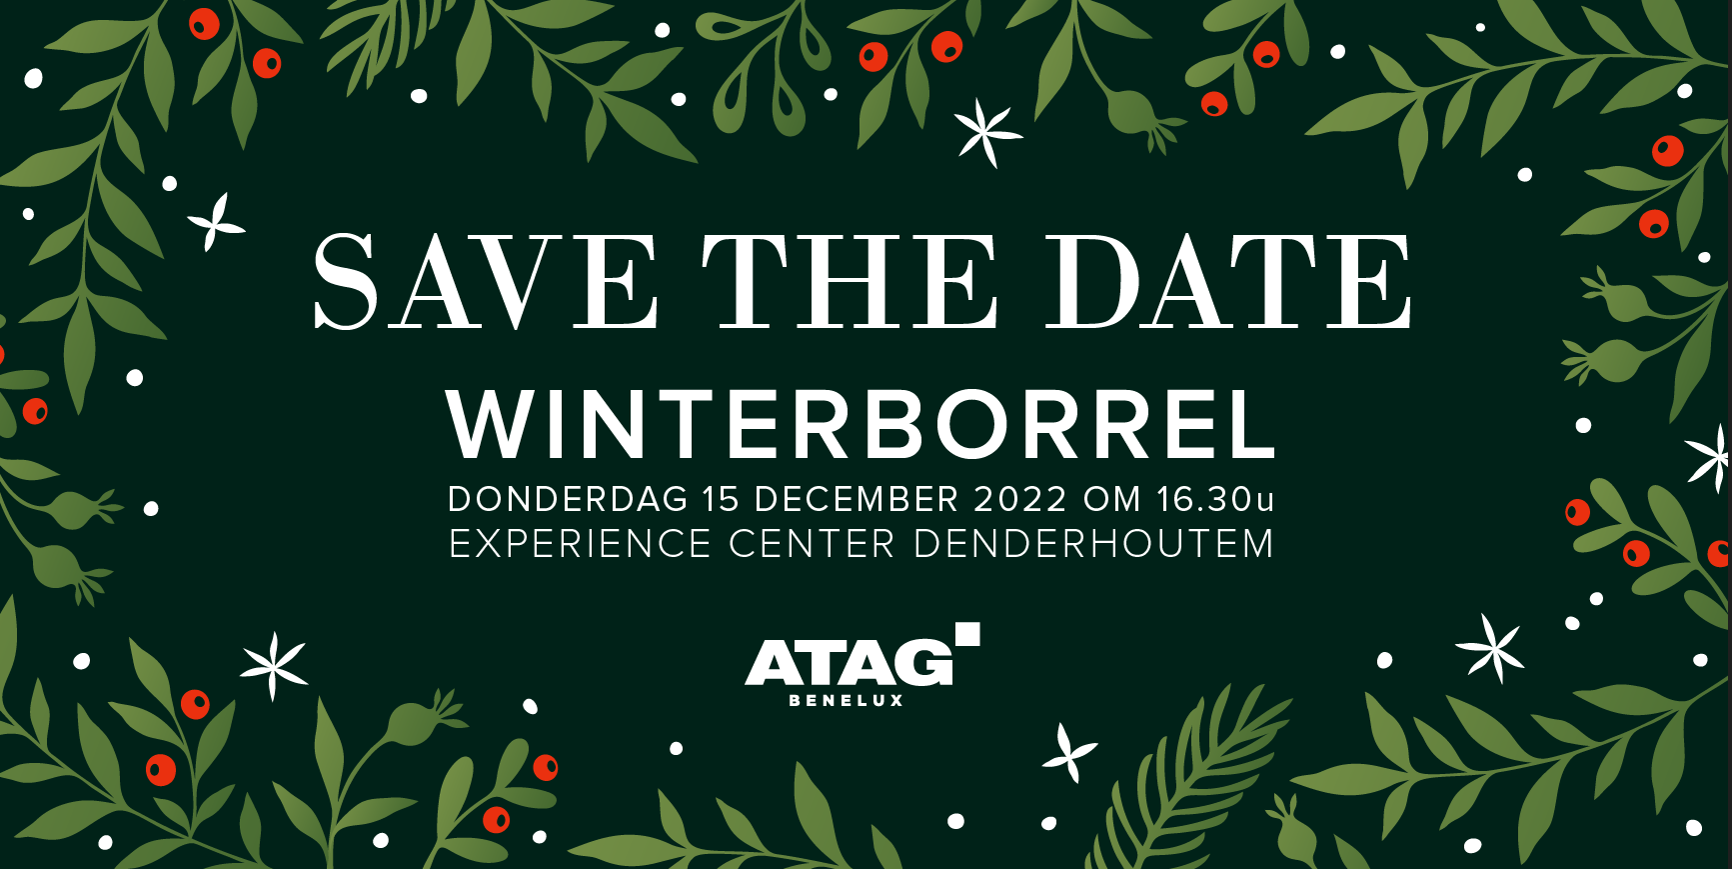 Uitnodiging: ATAG winterborrel op 9 december 2022